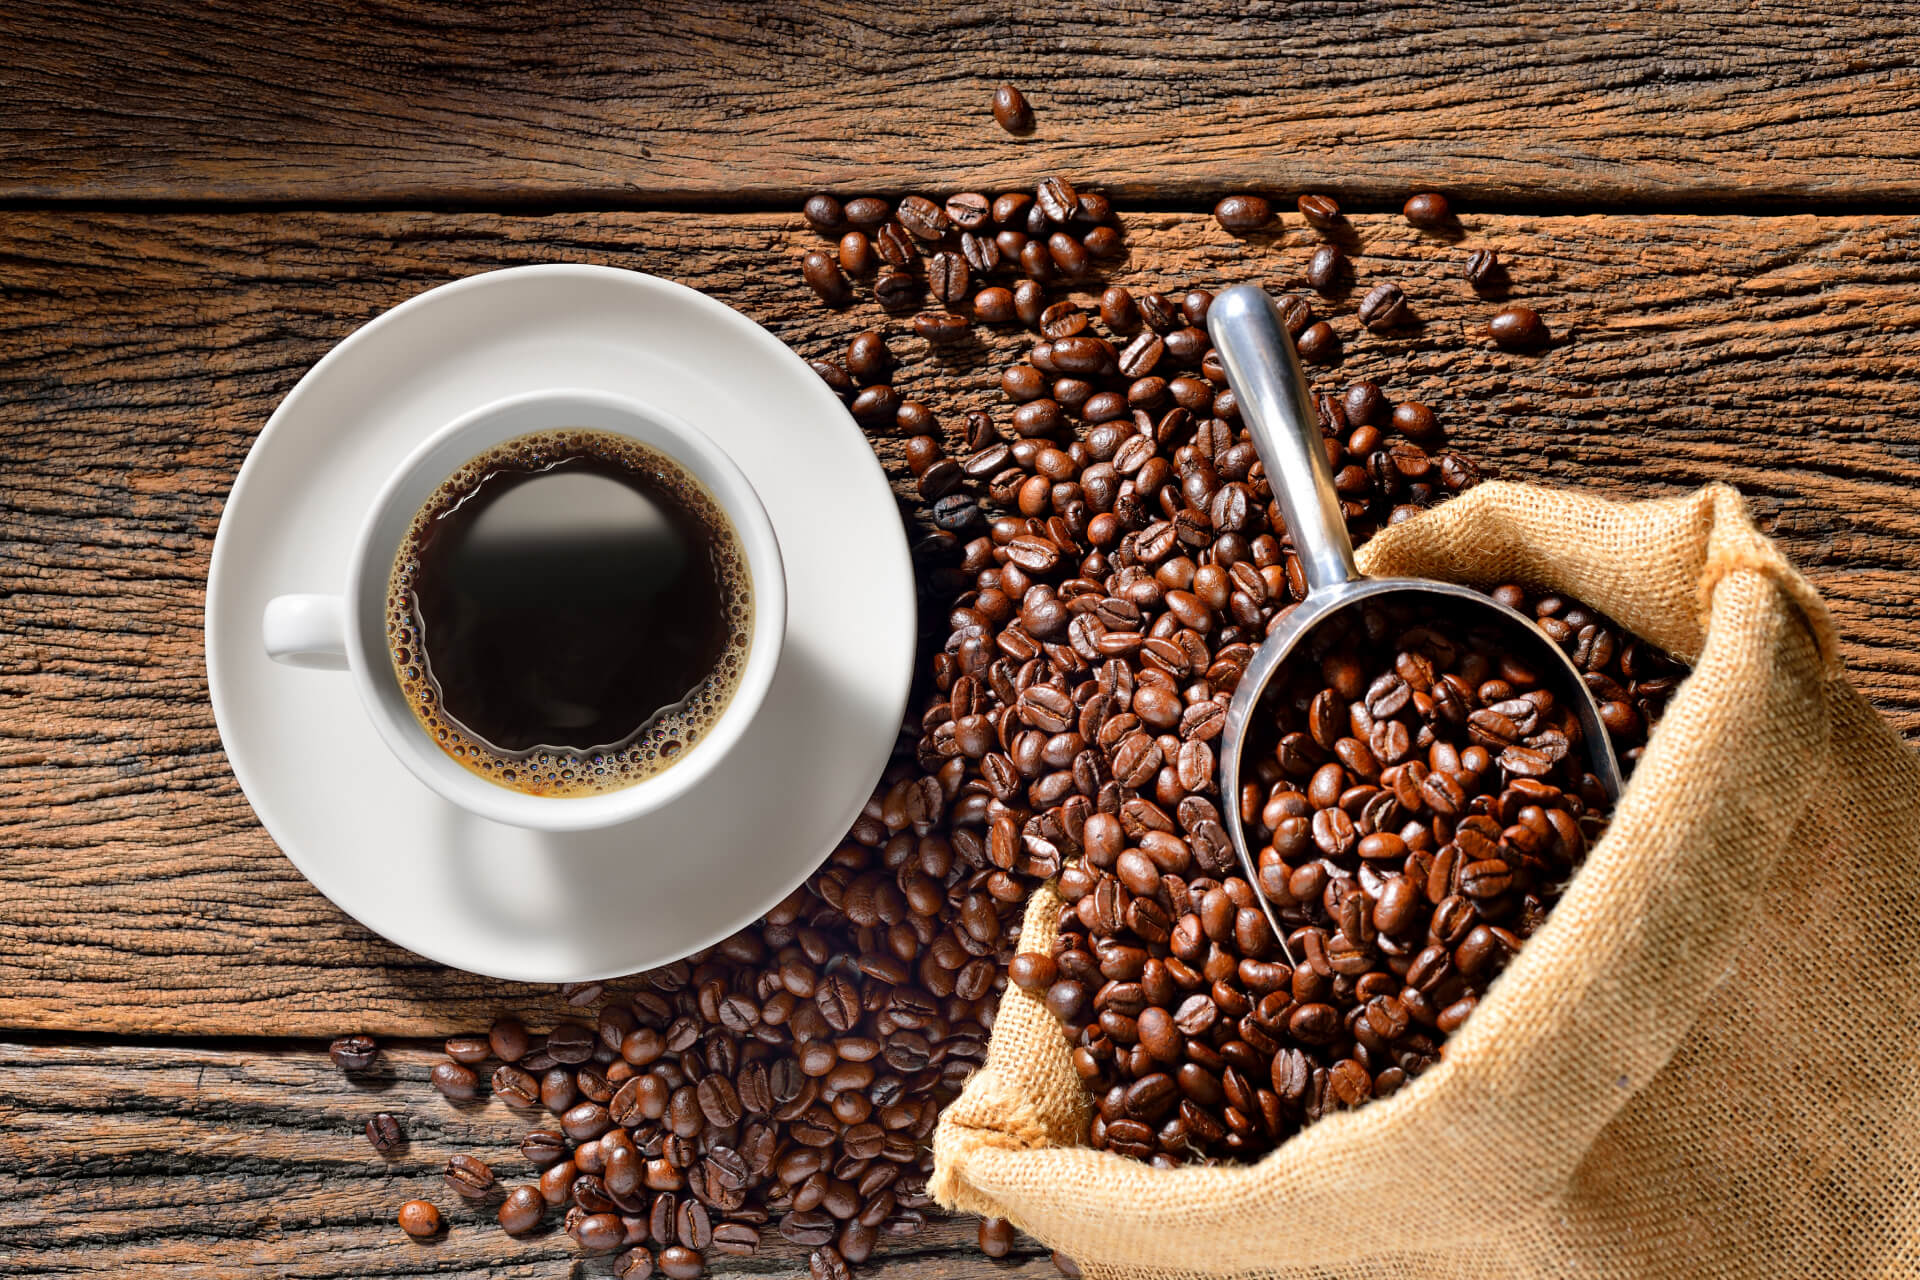 efeito da cafeína no organismo